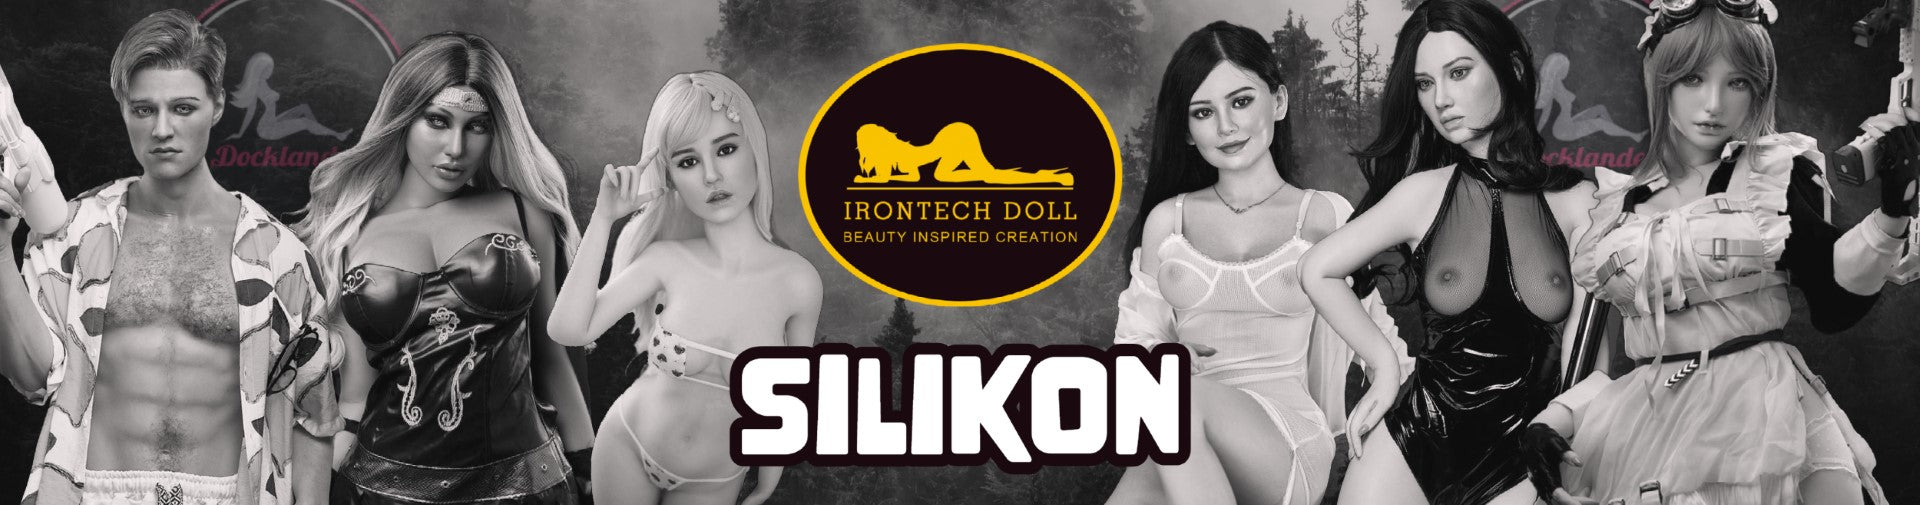 Topp 10 silikondockor från Irontech Doll. En sexdocka gjord av silikon är en exklusiv produkt av hög kvalitet. En real doll som ser ut exakt som en verklig människa. 